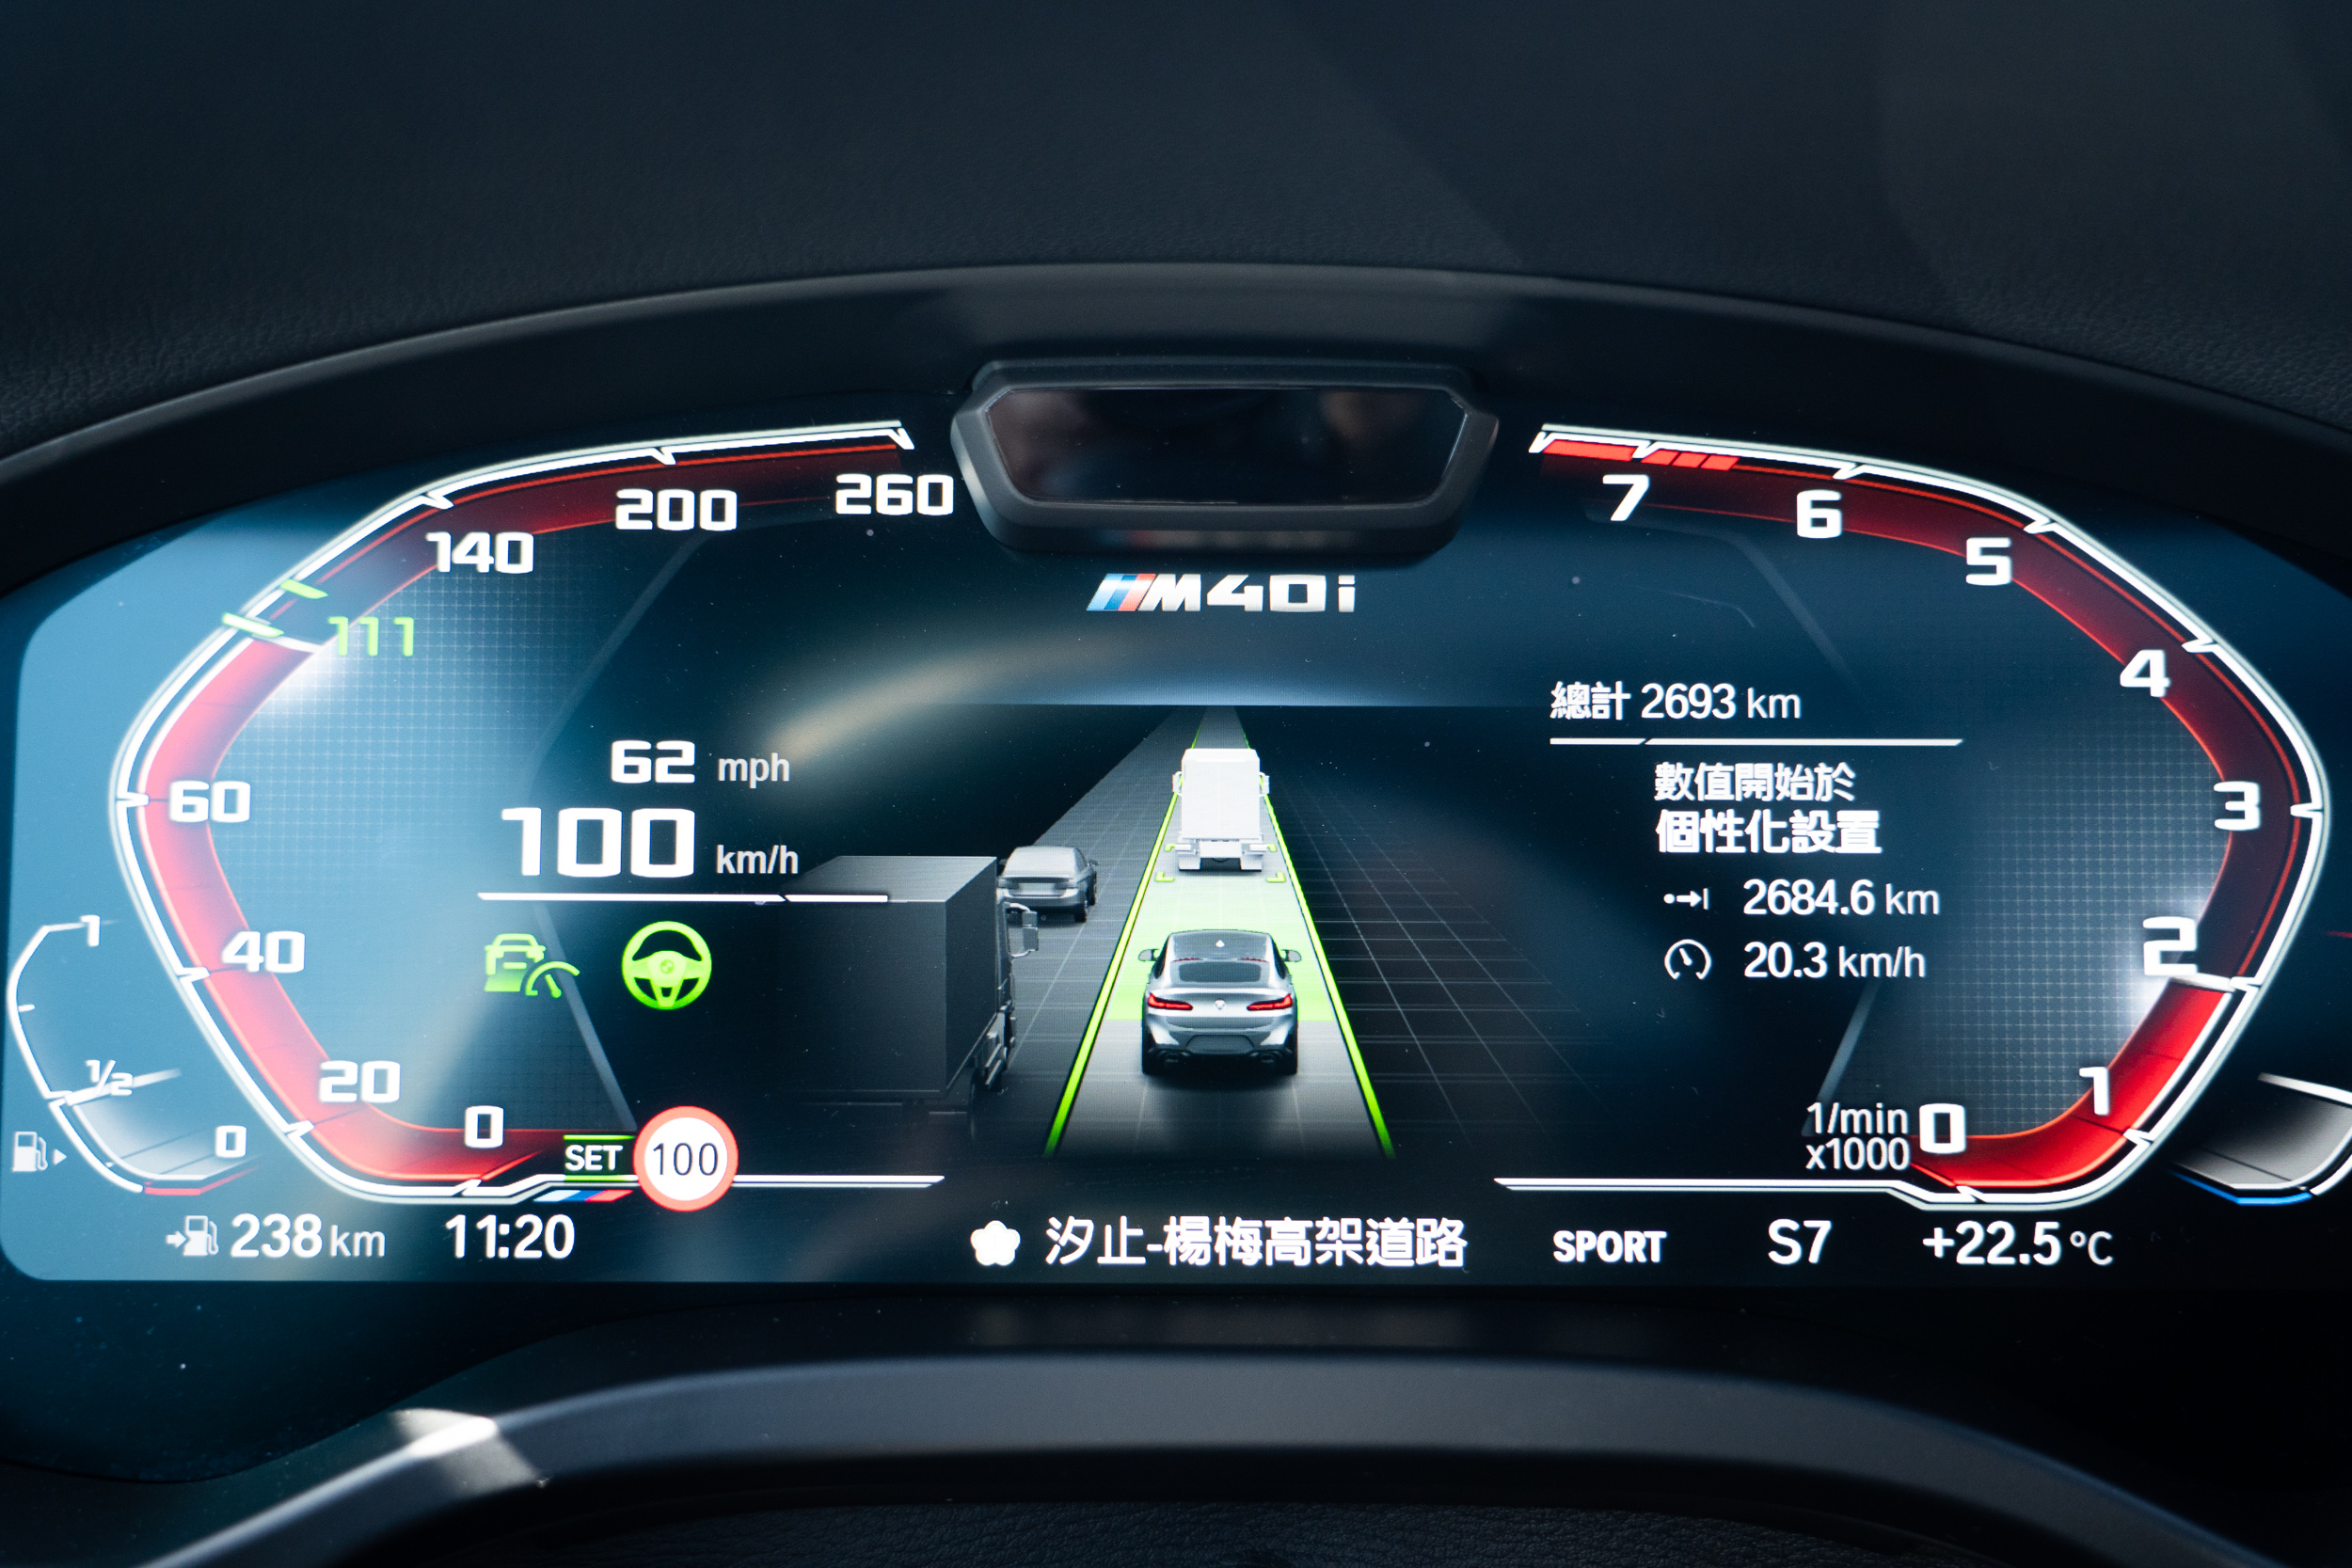 標配的智慧互聯駕駛相當齊全，包含主動車距定速控制系統、主動車道維持輔助、前後方車流警示、環景輔助攝影等皆有配備。